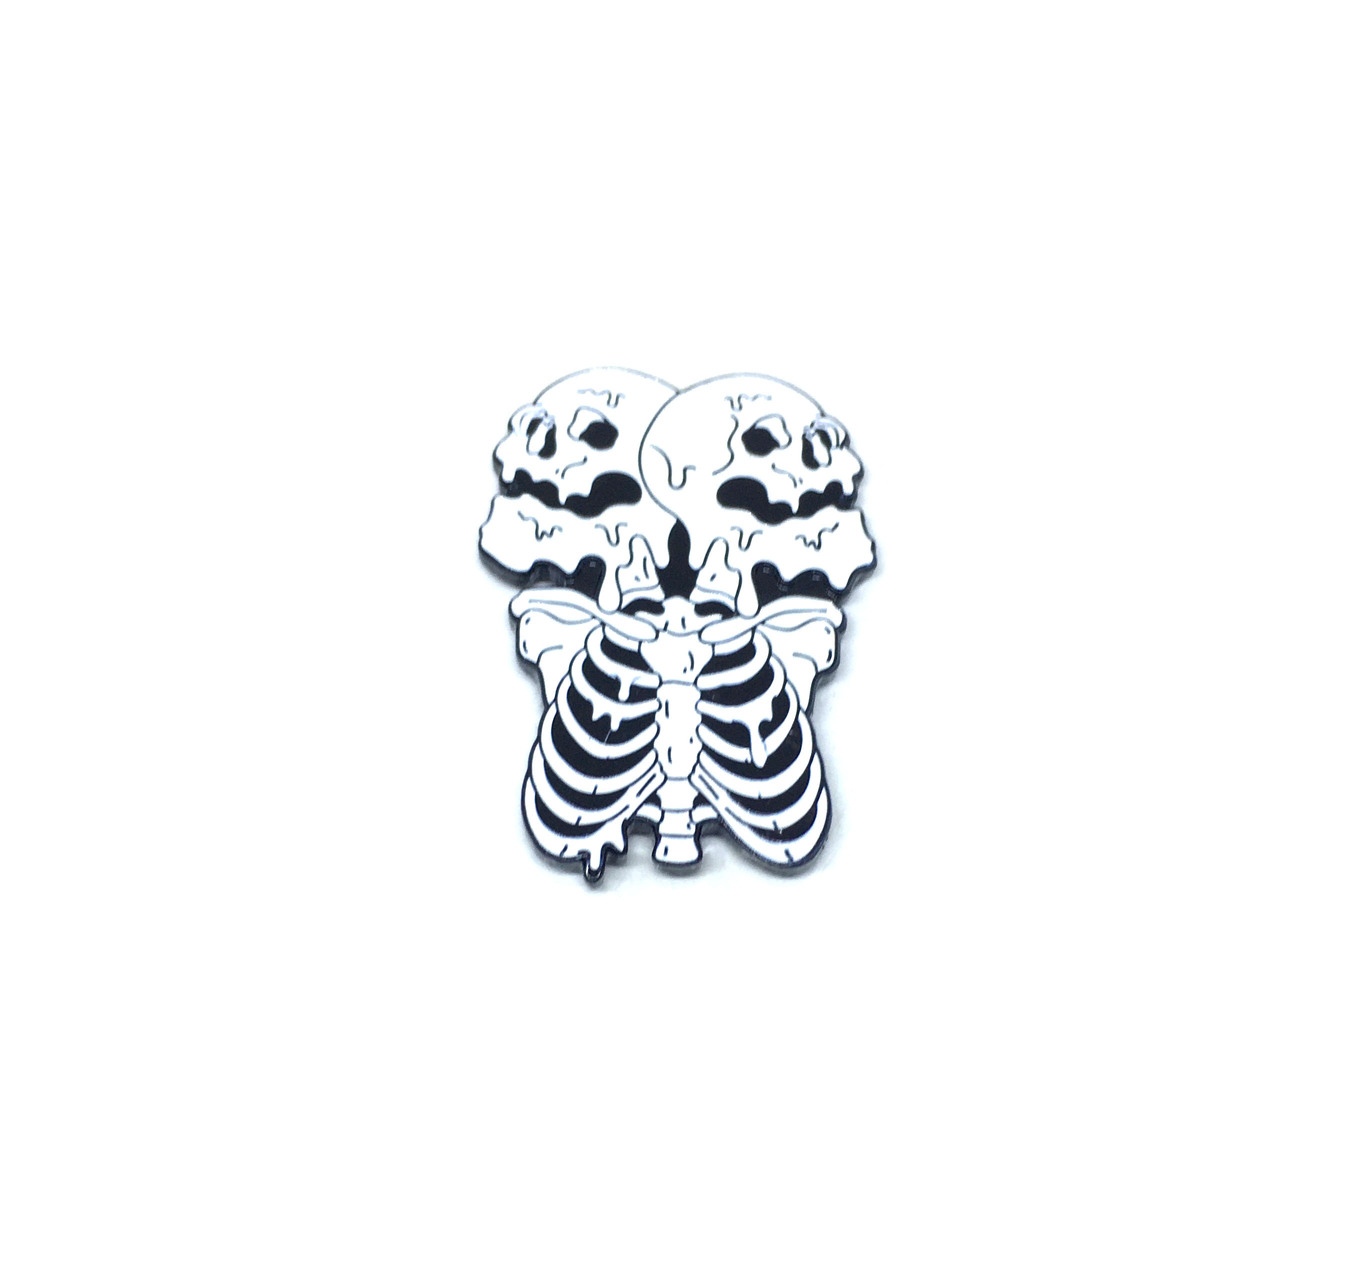 FSKU-029 Horror Skeleton Skull Enamel Pin